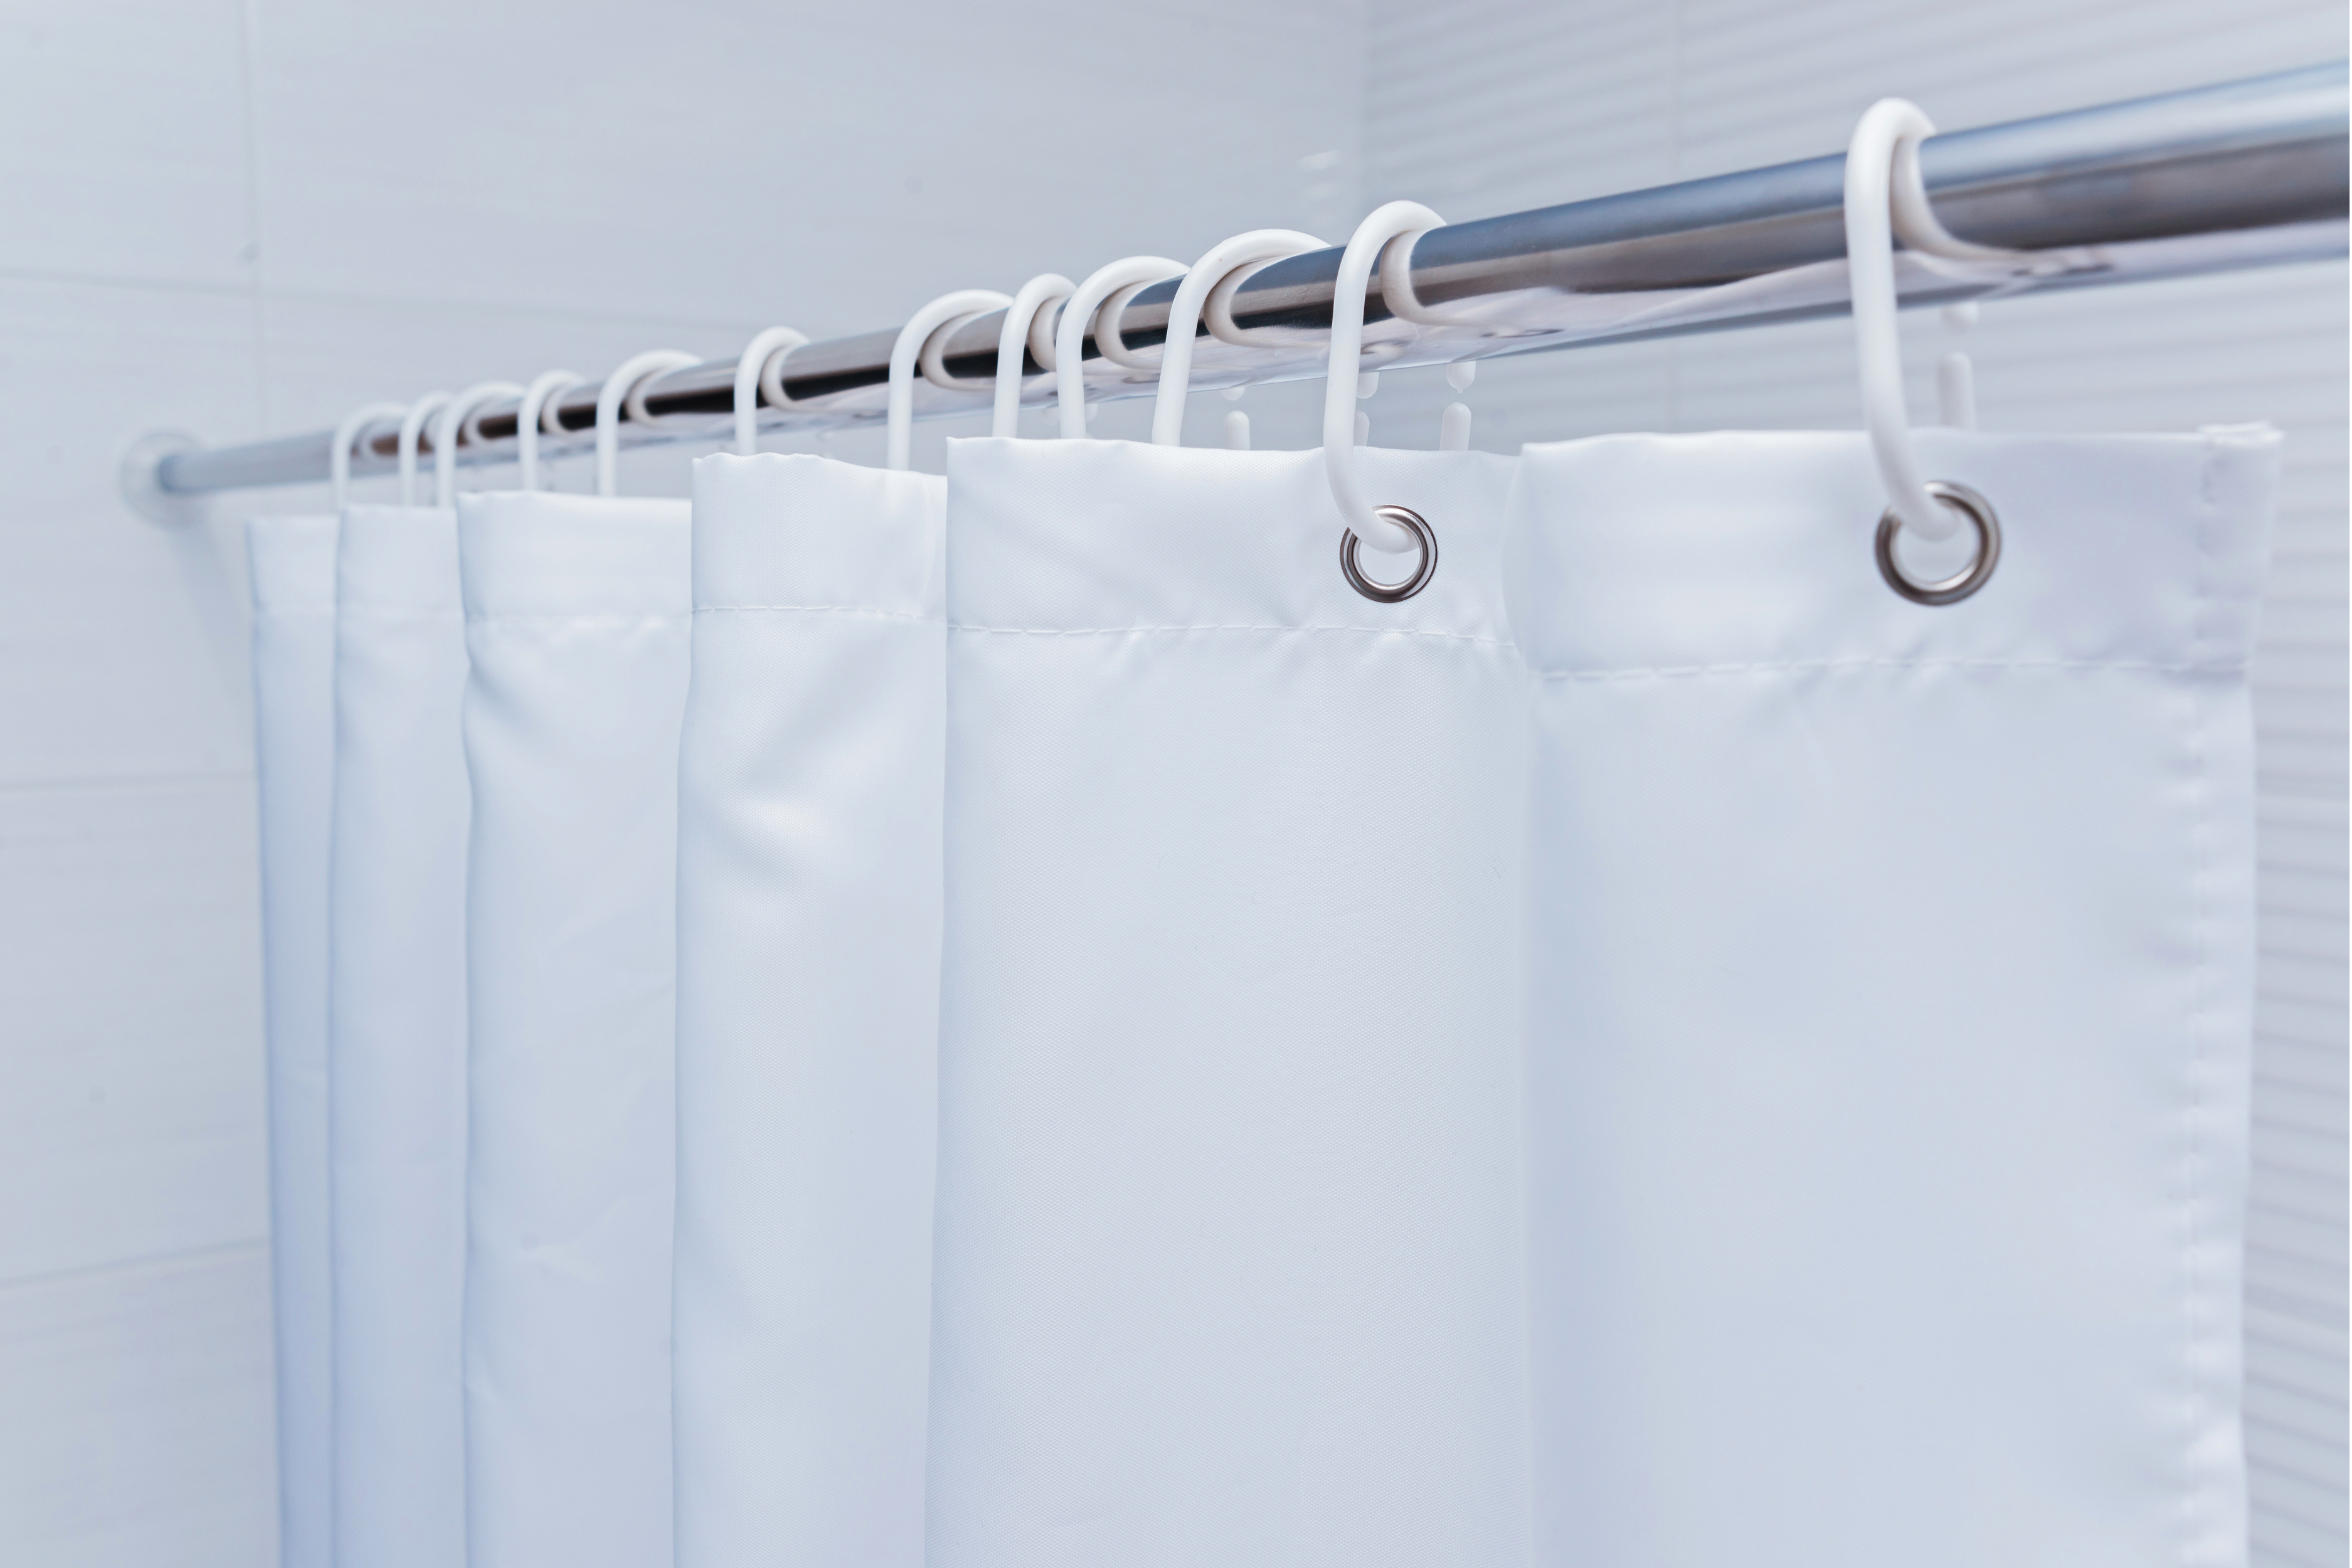 Cortinas blancas de baño, representando la importancia de su correcta limpieza y secado para prevenir el moho